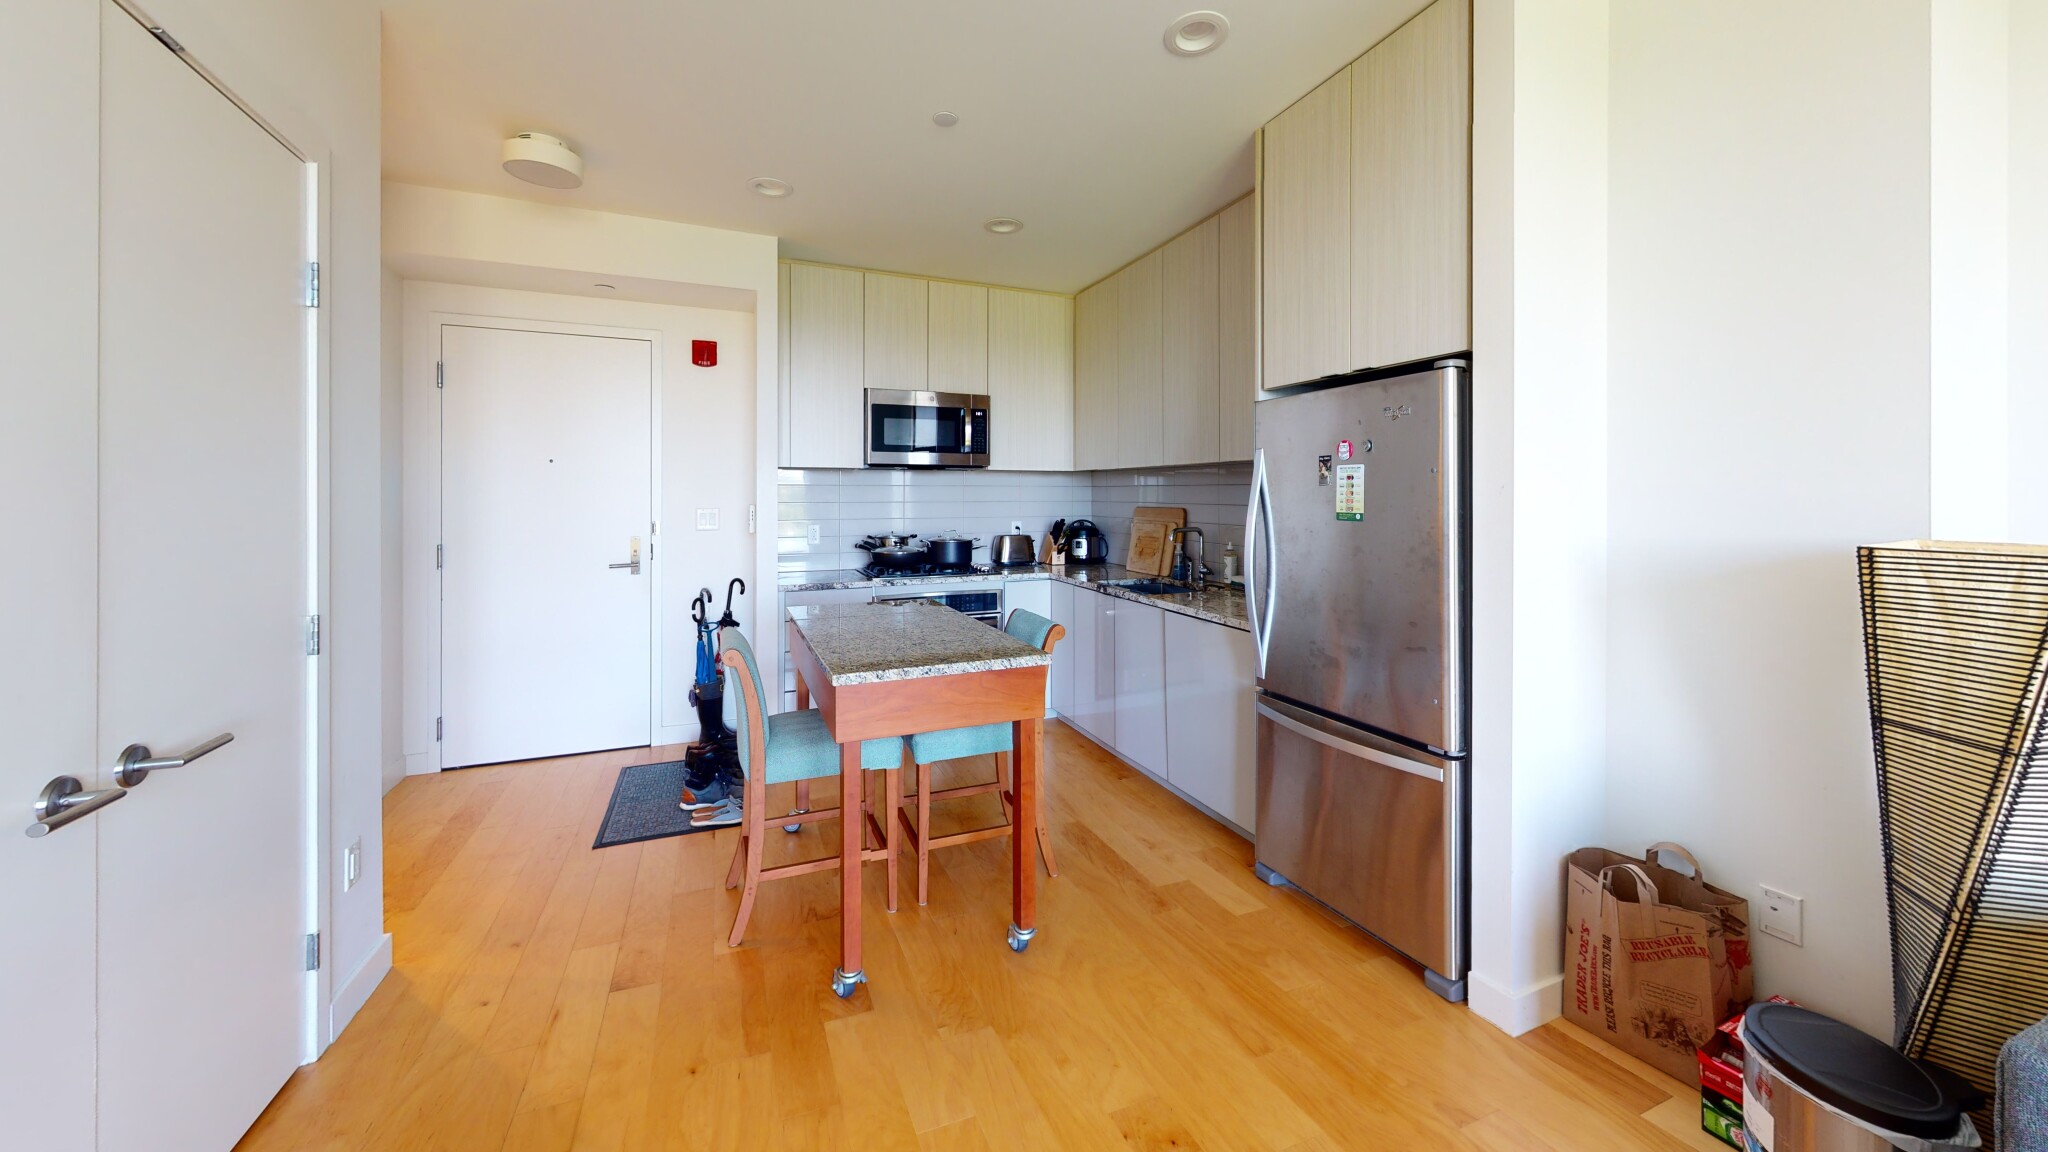 Photos of apartment on Gainsborough,Boston MA 02115